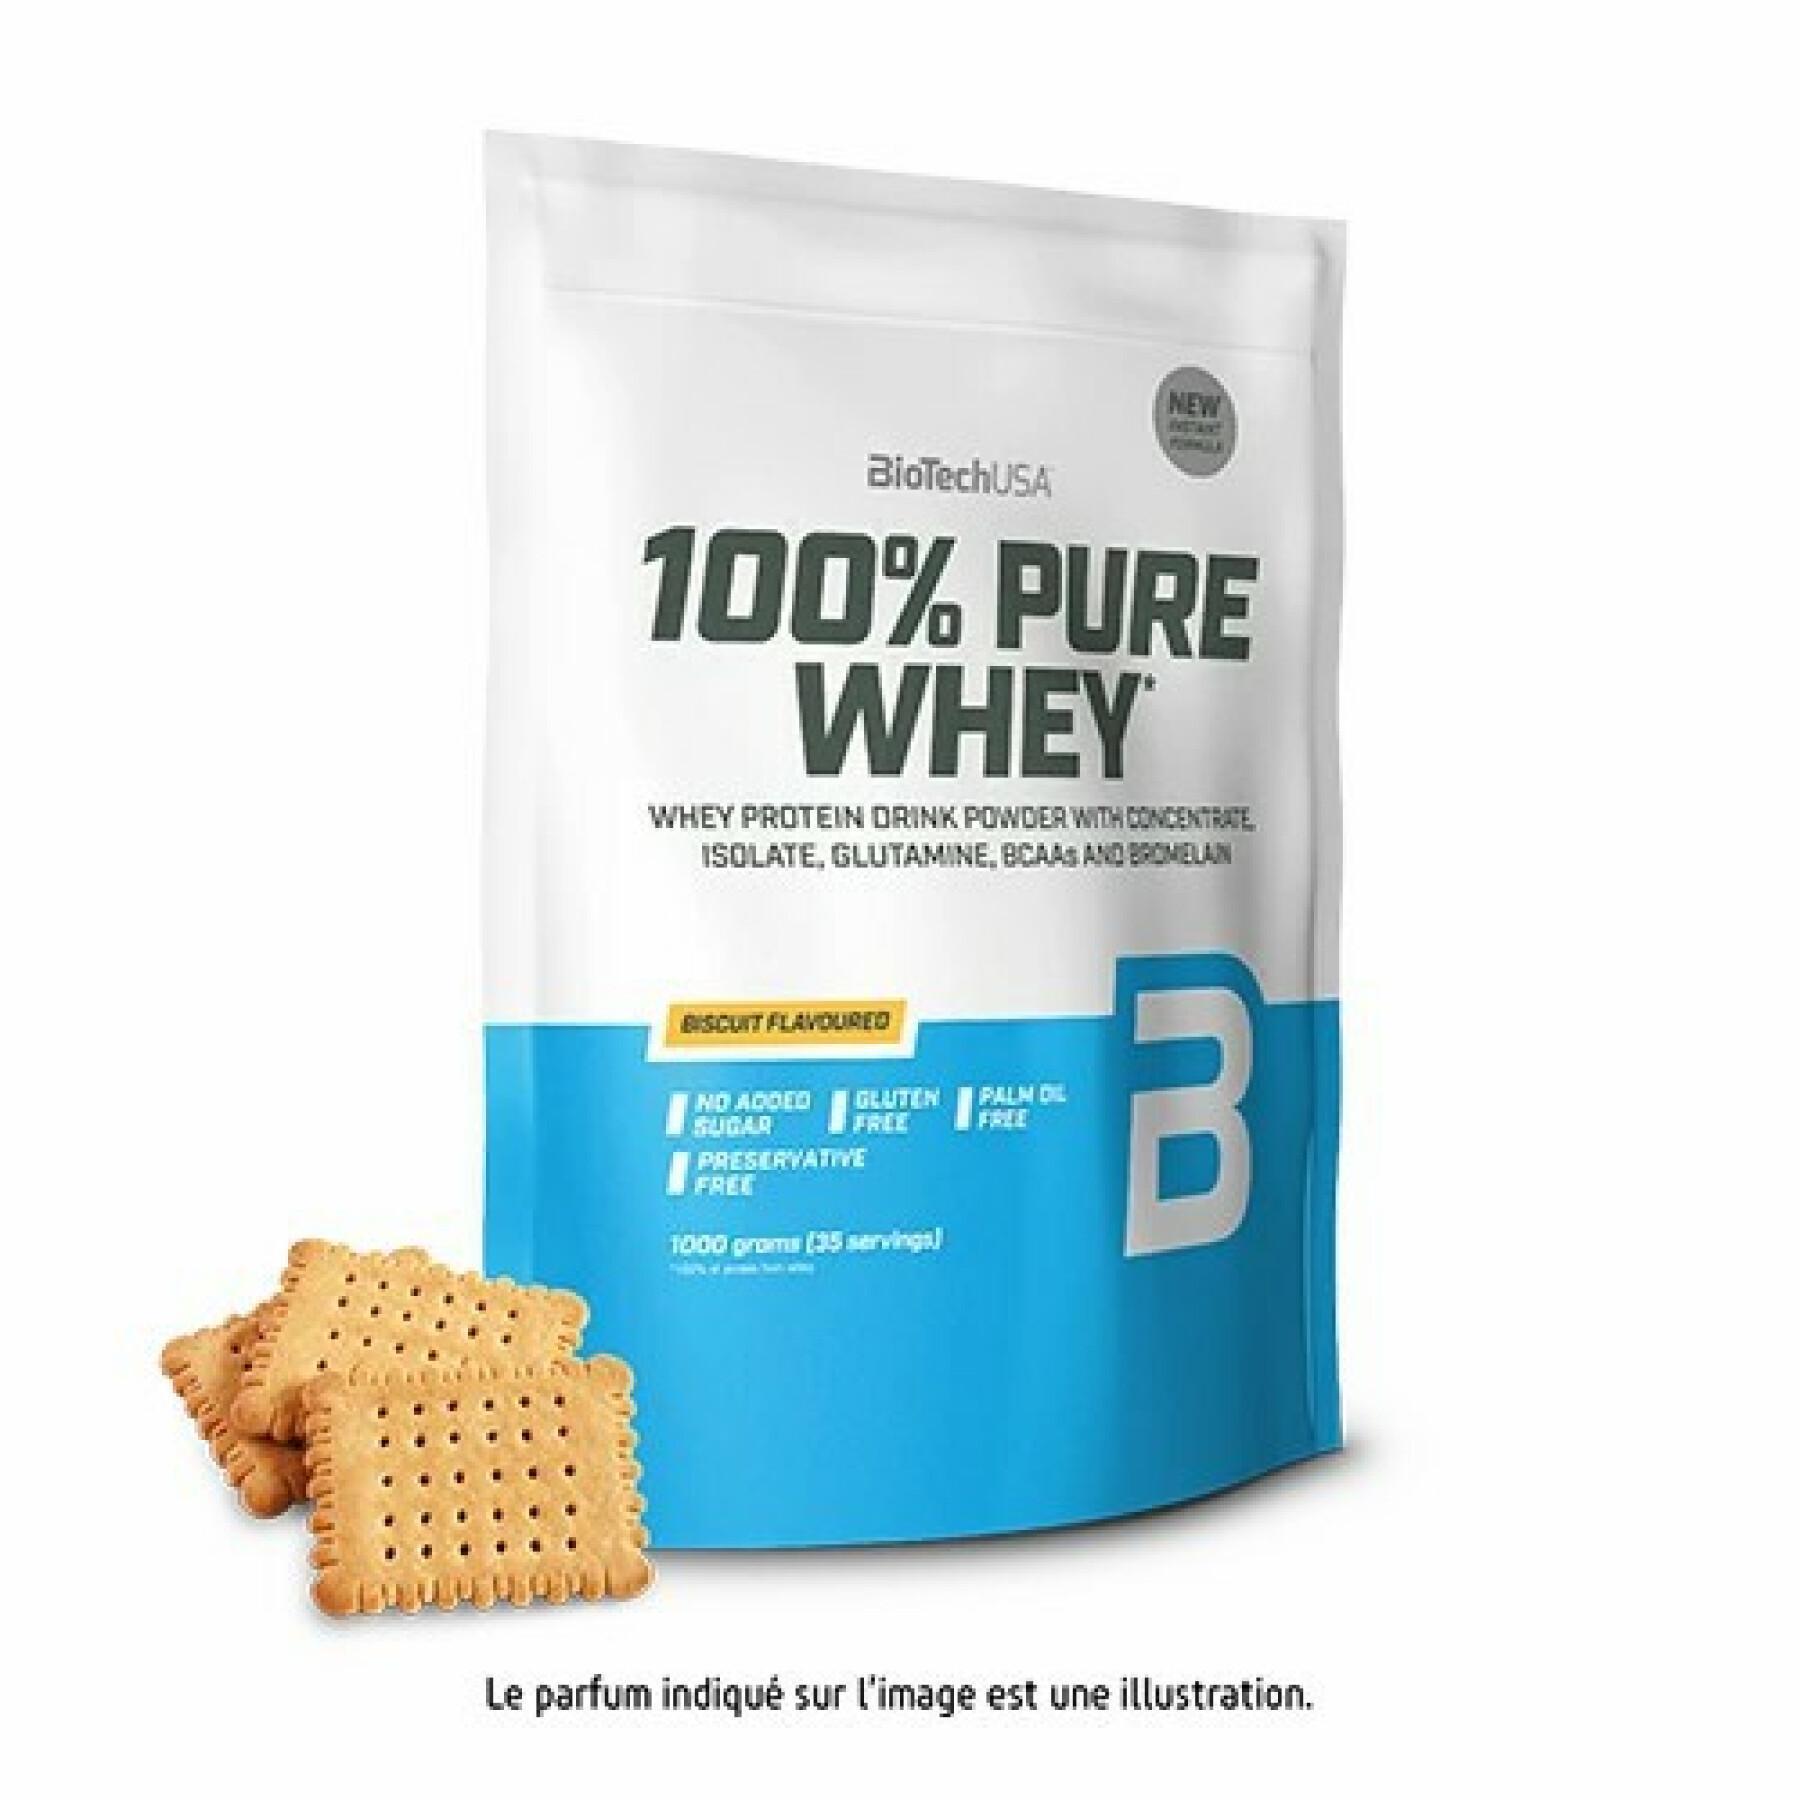 Opakowanie 10 torebek 100% czystego białka serwatkowego Biotech USA - Biscuit - 1kg